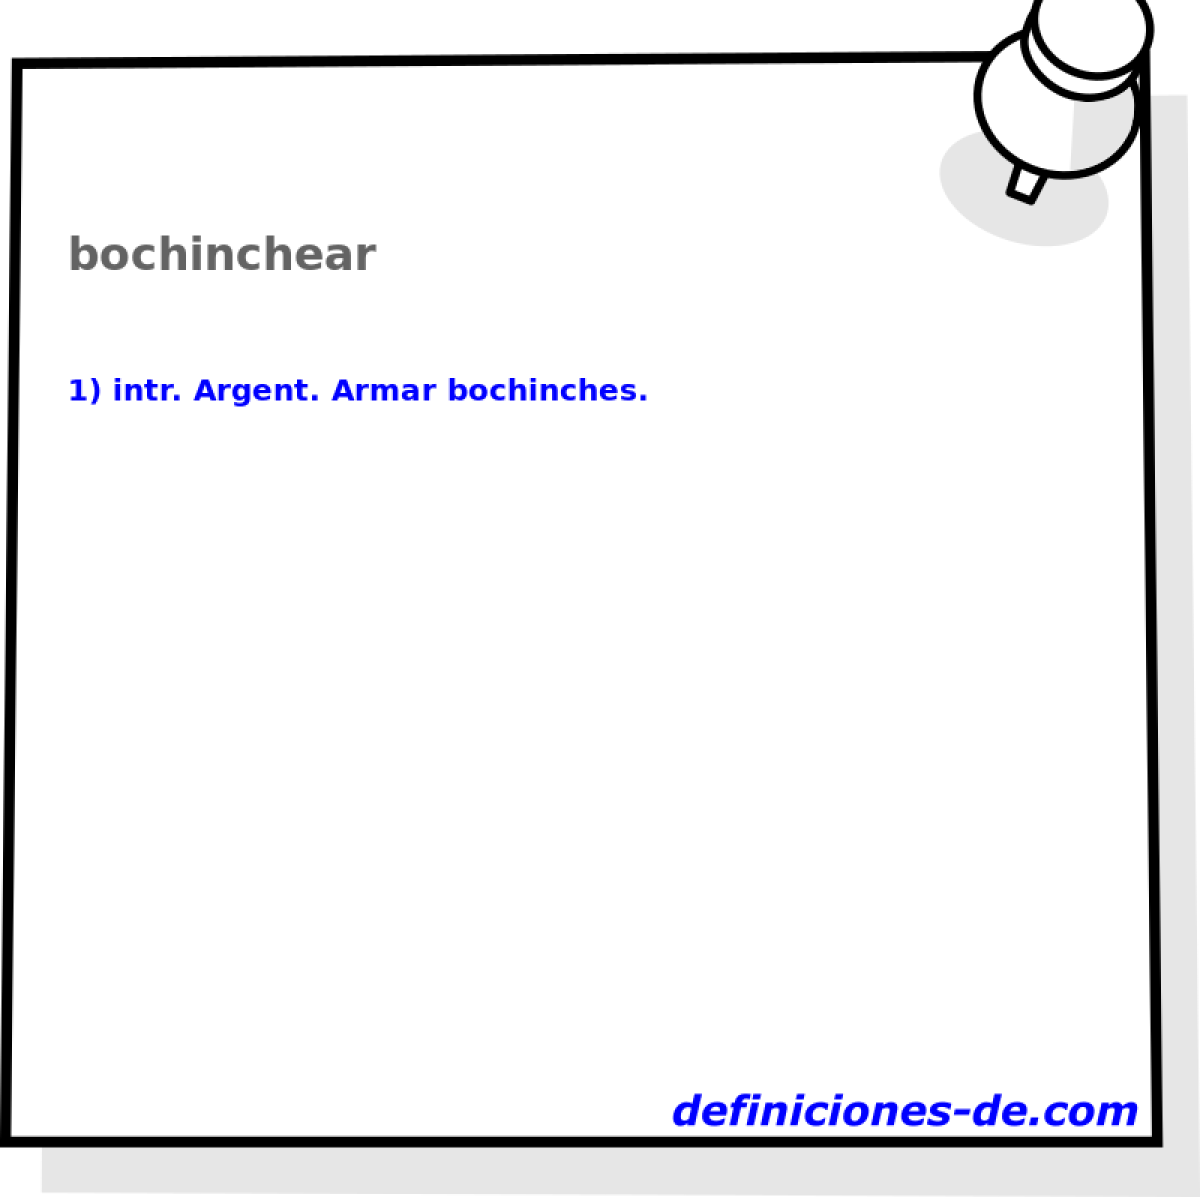 bochinchear 